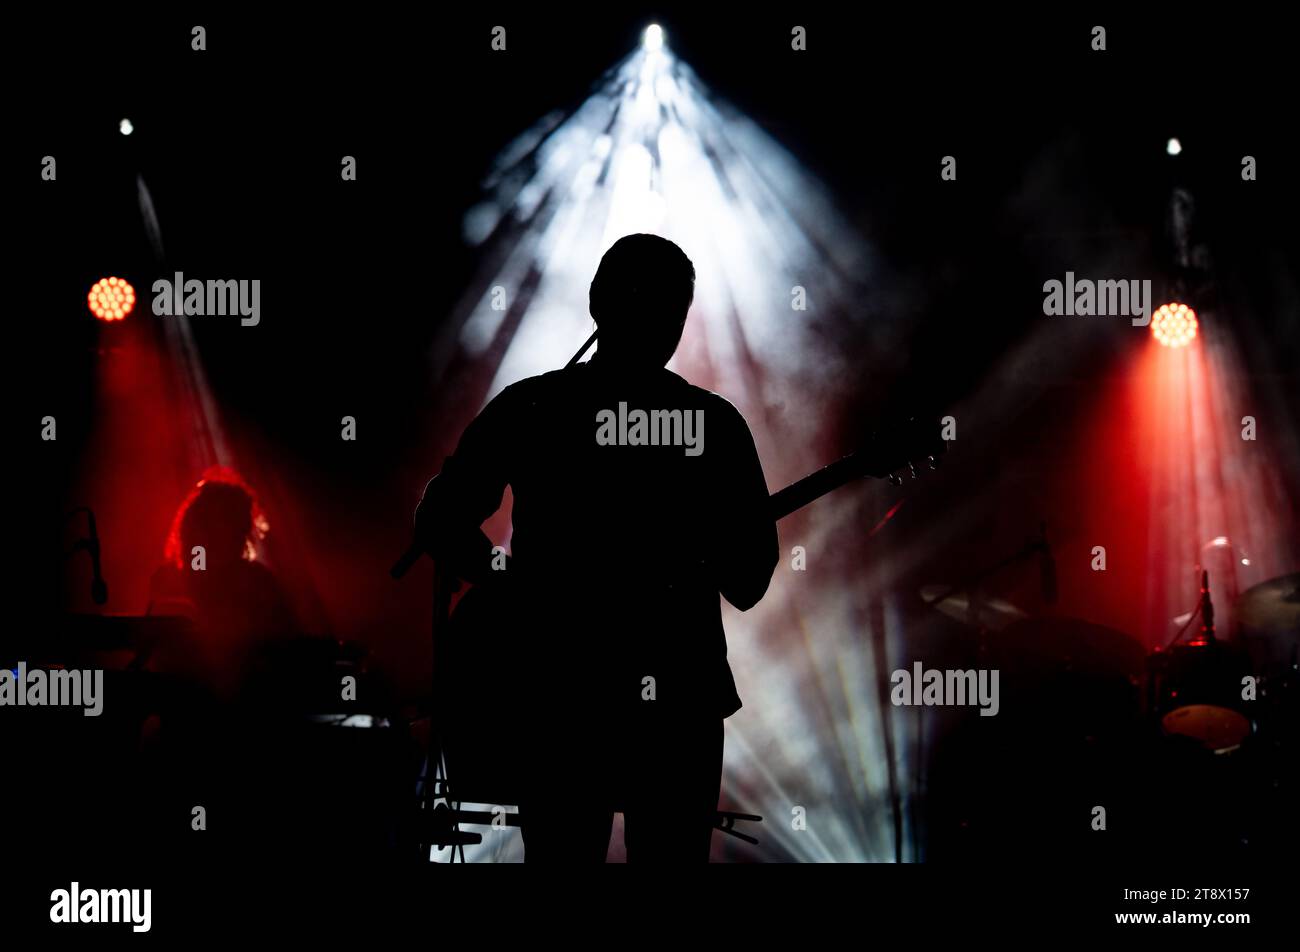 Musicien jouant de la guitare jouant sur scène sous la lumière du spot. Silhouette d'un artiste de musique et d'un groupe sur scène Banque D'Images